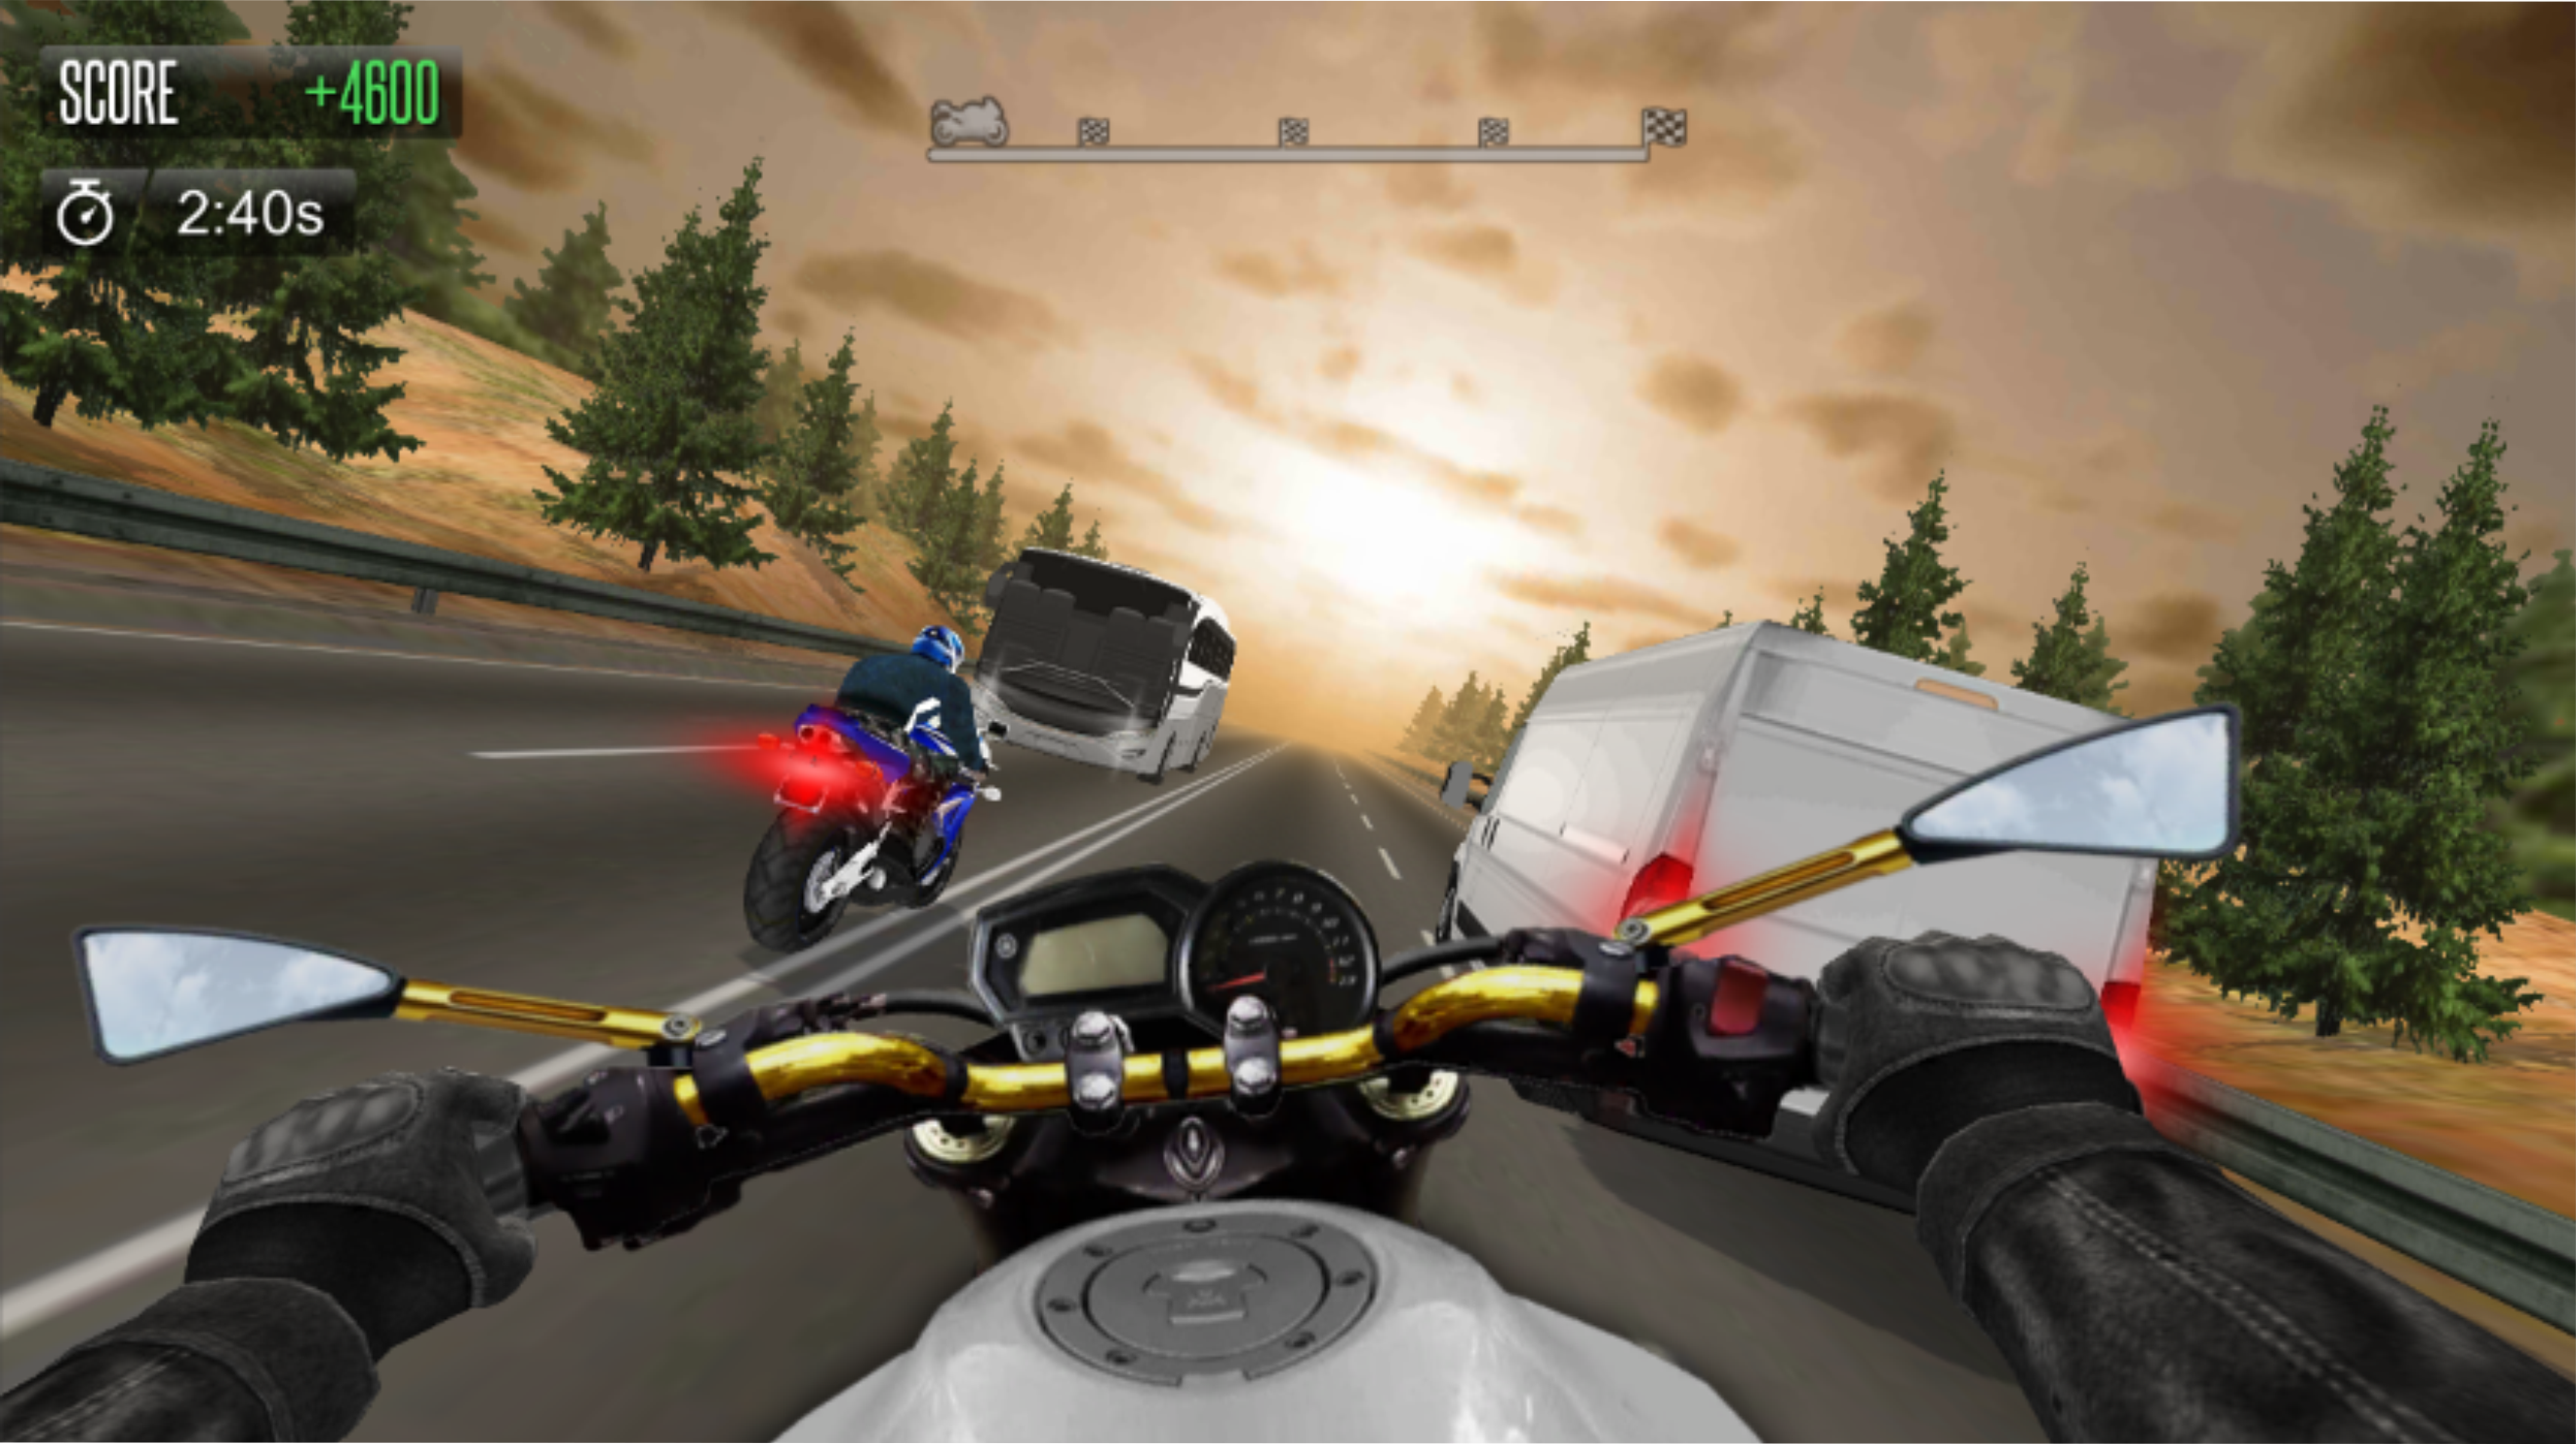 Screenshot 1 of Bike Simulator 2 - เครื่องจำลอง 